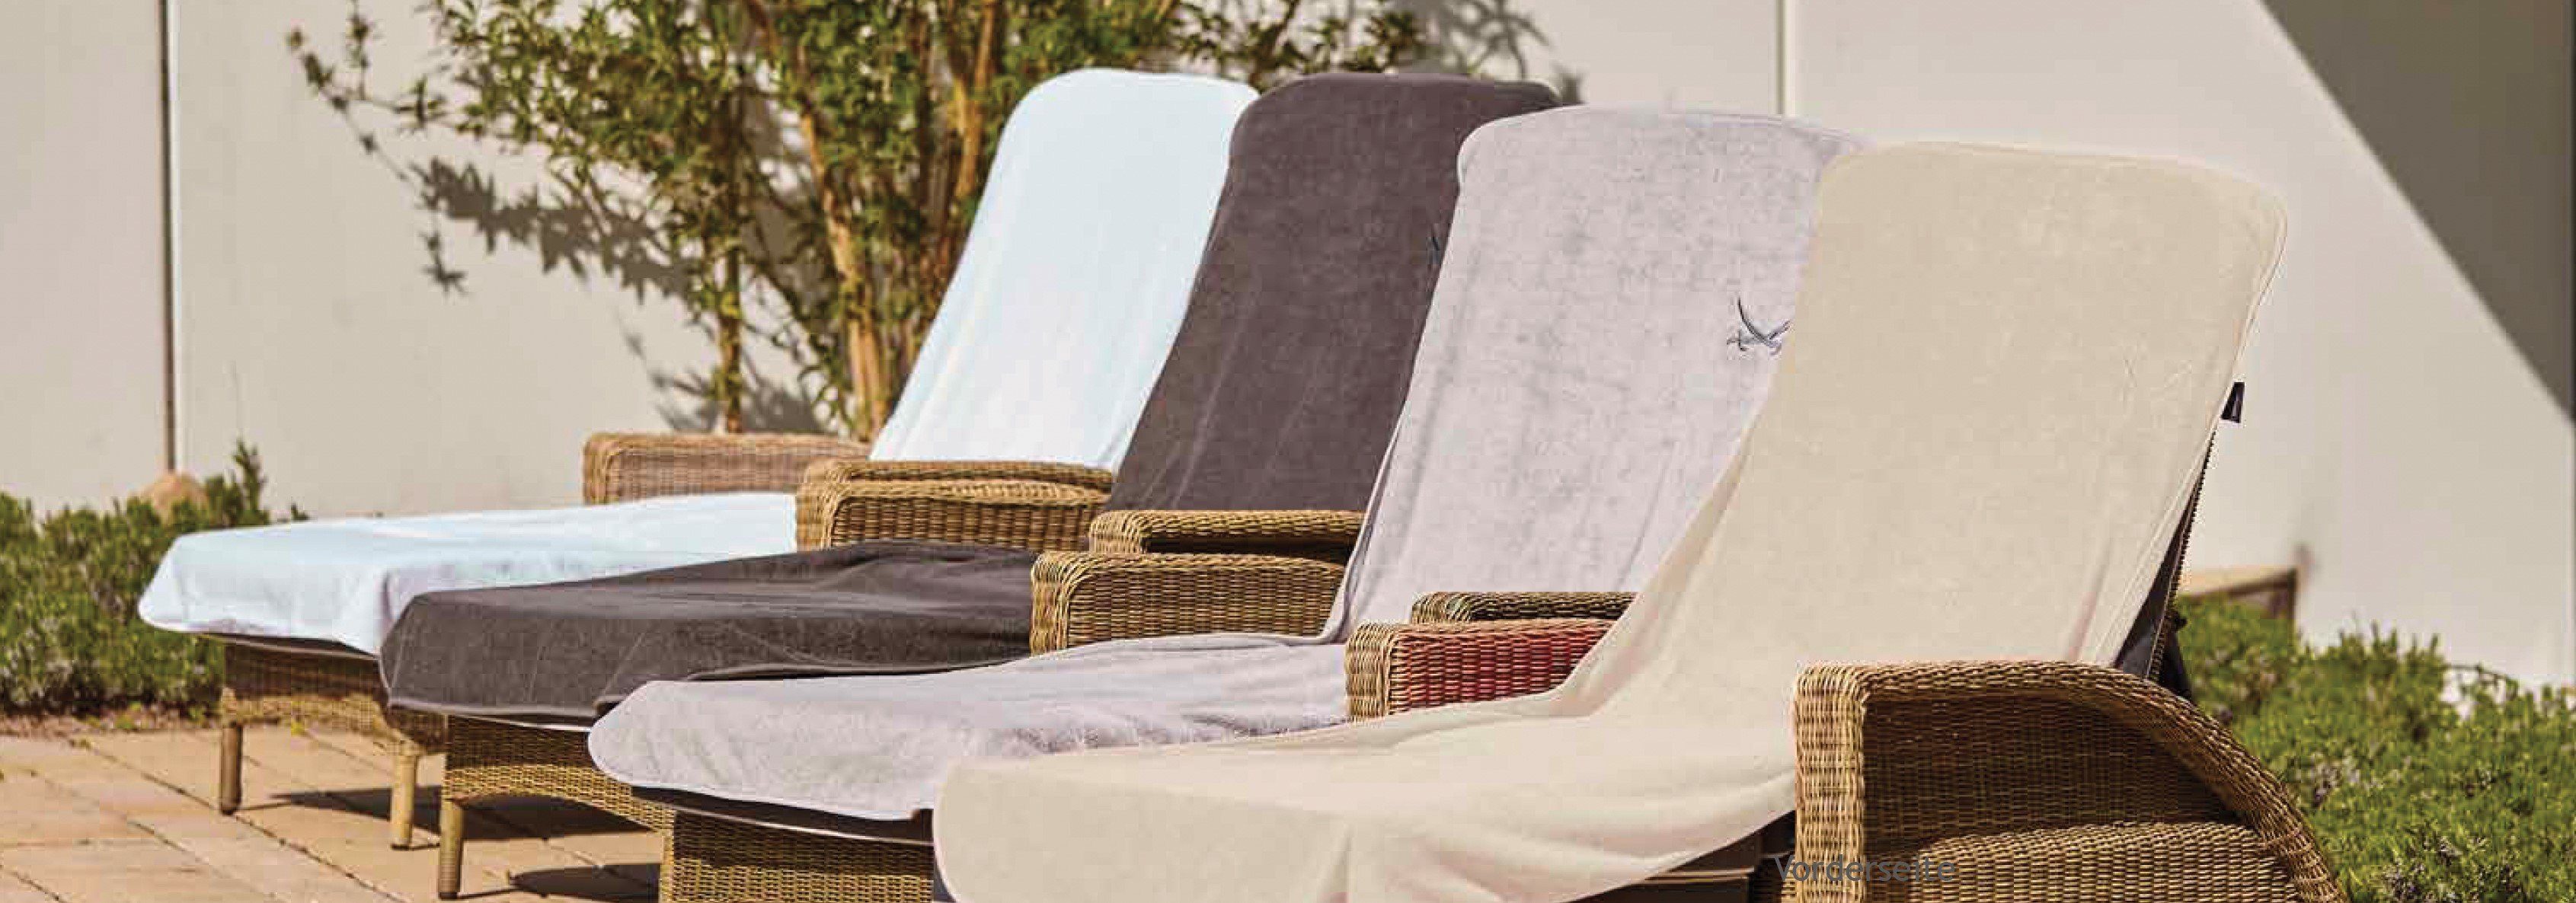 Sansibar Sylt Saunatuch Schonbezug Liegenauflage Sansibar mit gesticktem Säbel, 75x200 cm, mit Umschlag ohne Verrutschen, hautfreundlich, pflegeleicht sand